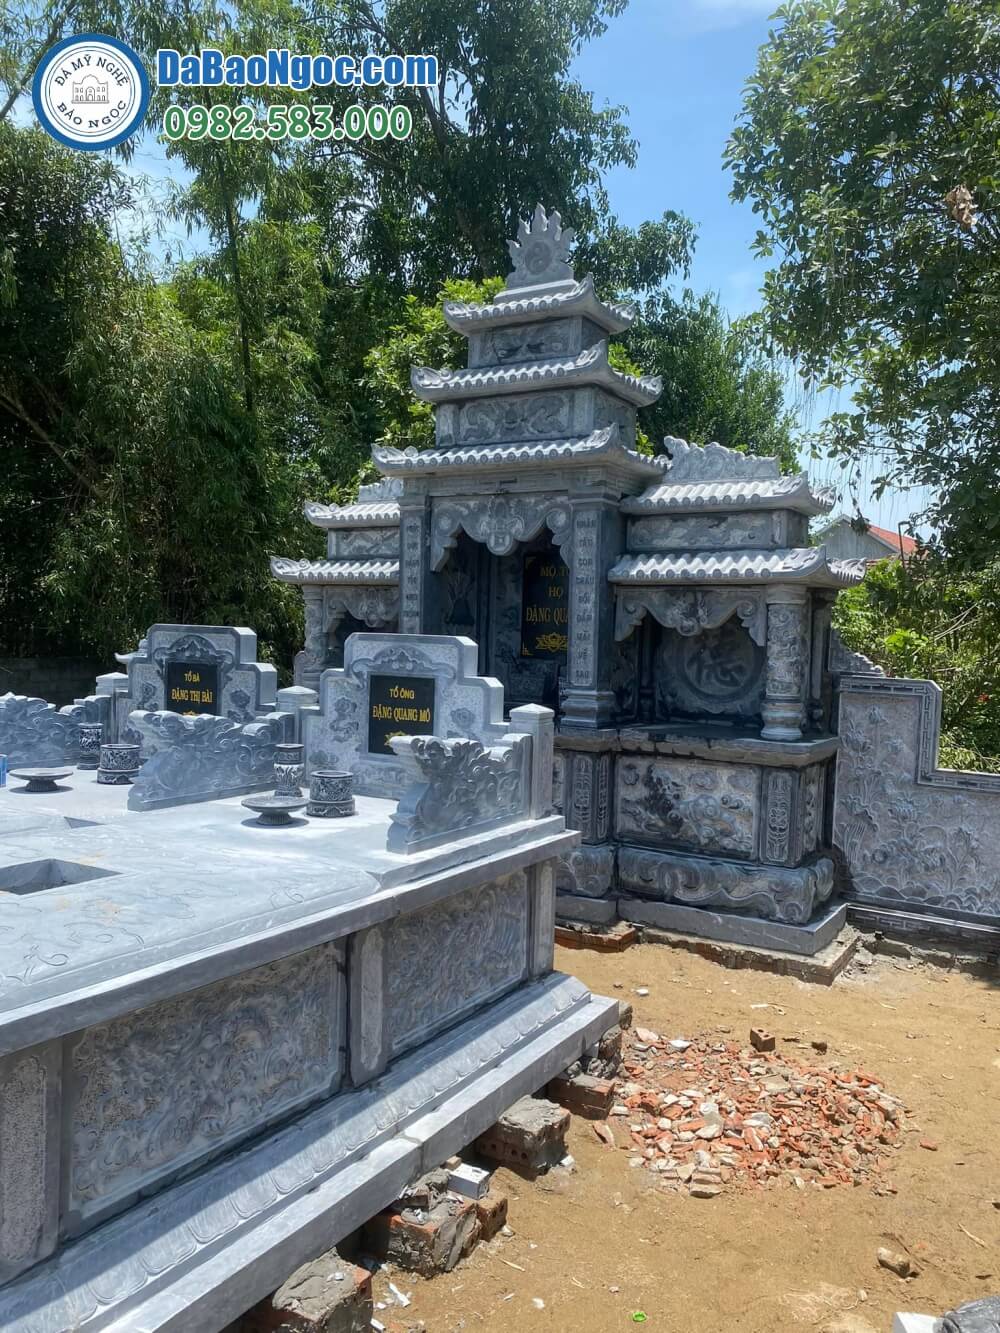 Làm mộ đá nguyên khối tại Vĩnh Phúc | Cơ sở chế tác uy tín, báo giá, mẫu thiết kế riêng theo yêu cầu